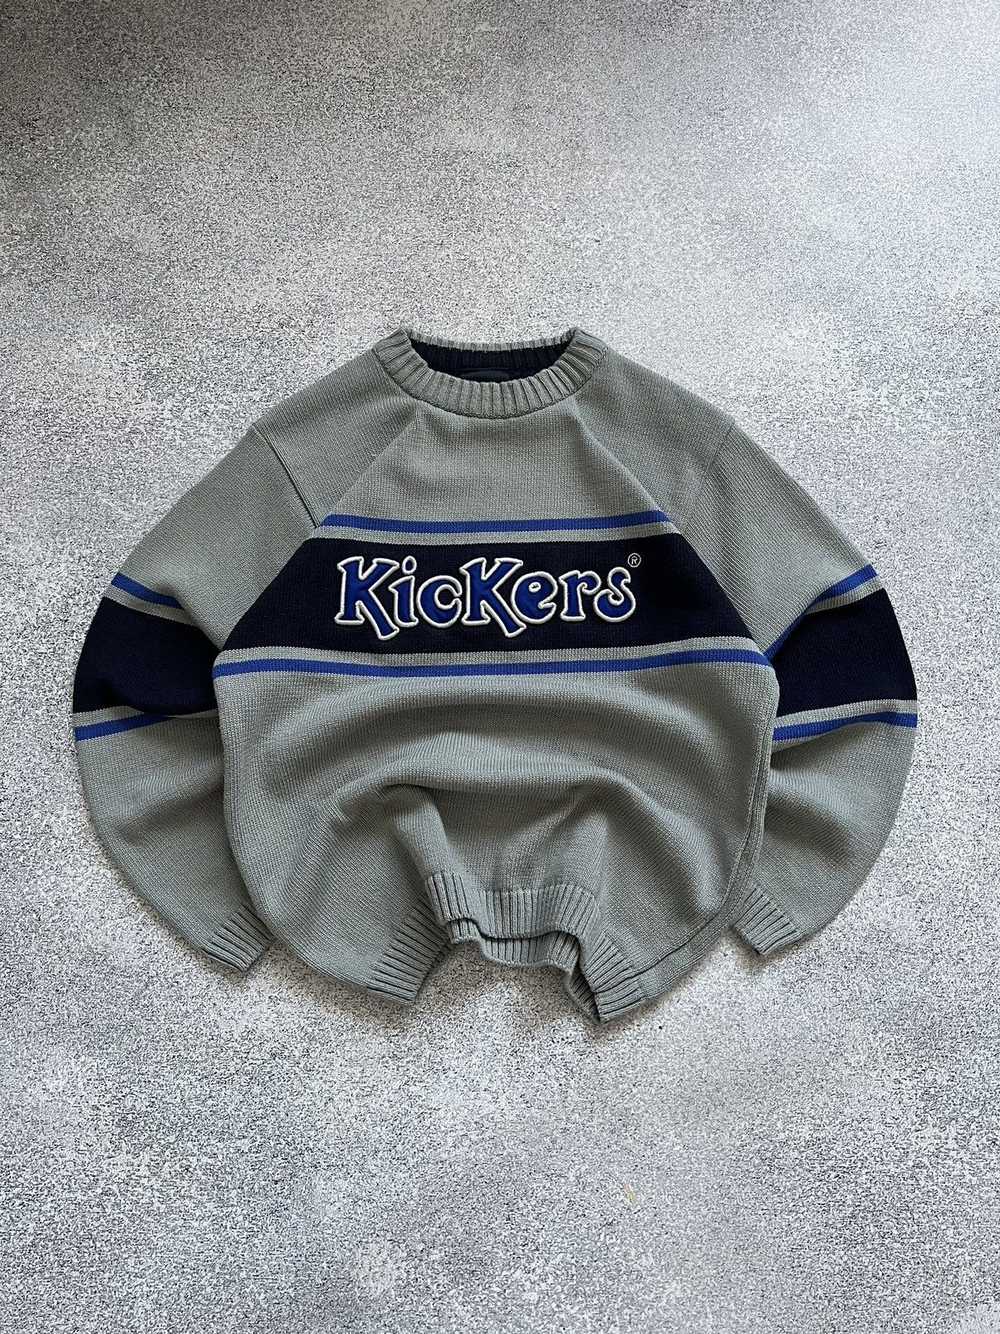 Kickers × Streetwear × Vintage Vintage 90s Kicker… - image 1